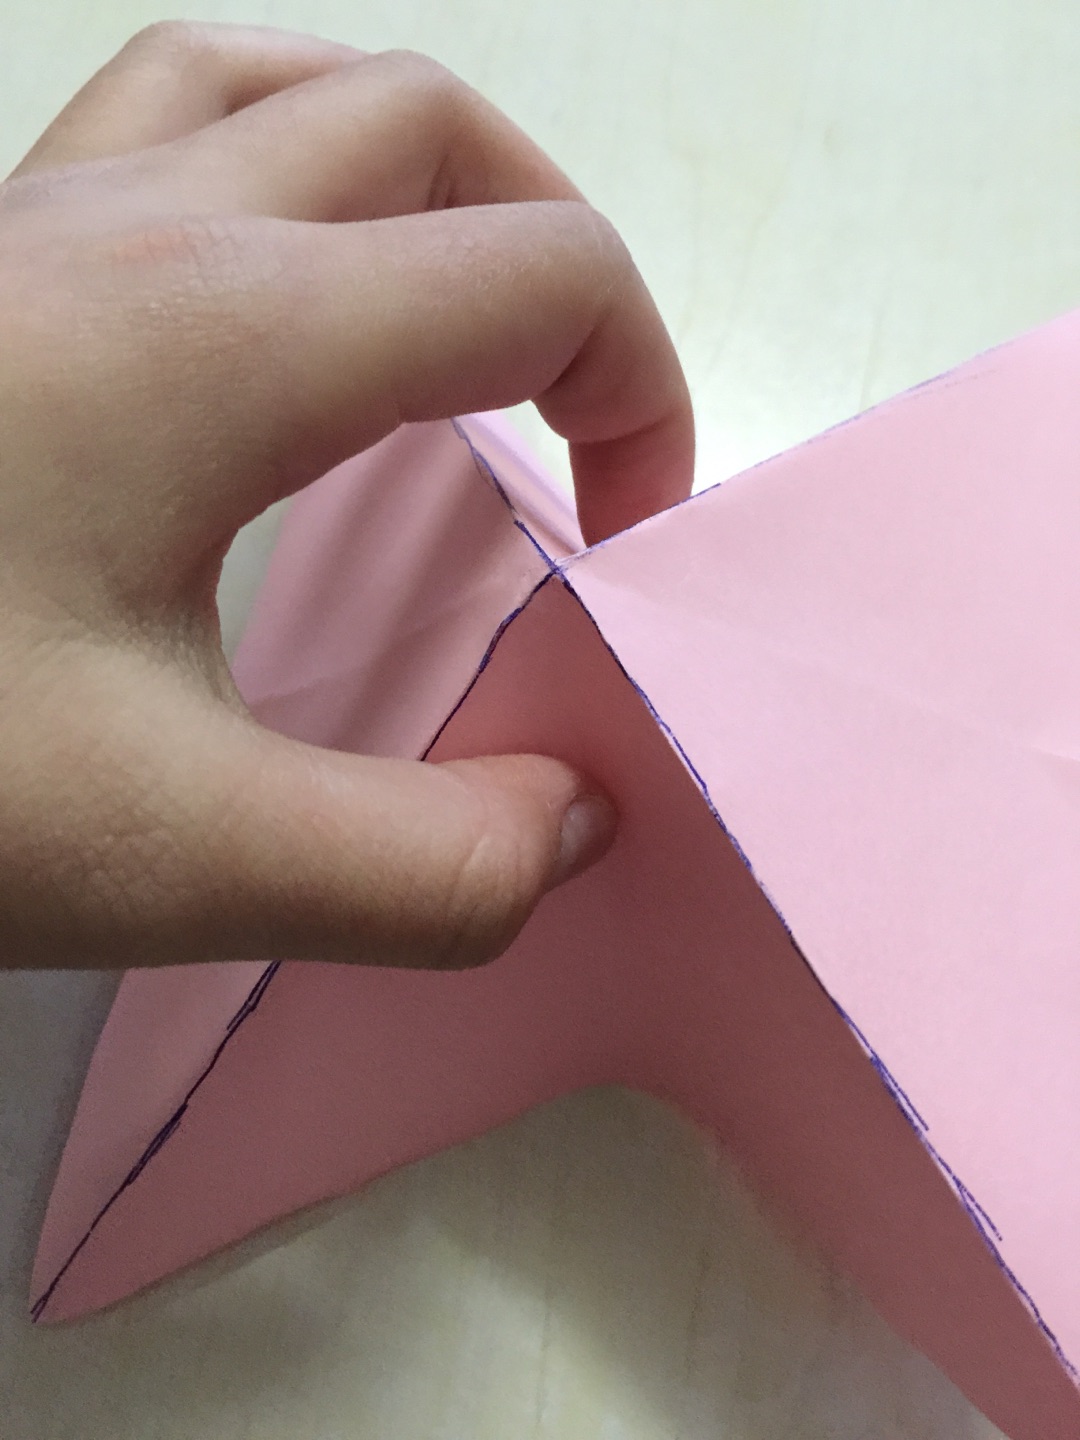 小孩易学的DIY折纸方法 小桃子的折法图解教程 咿咿呀呀儿童手工网